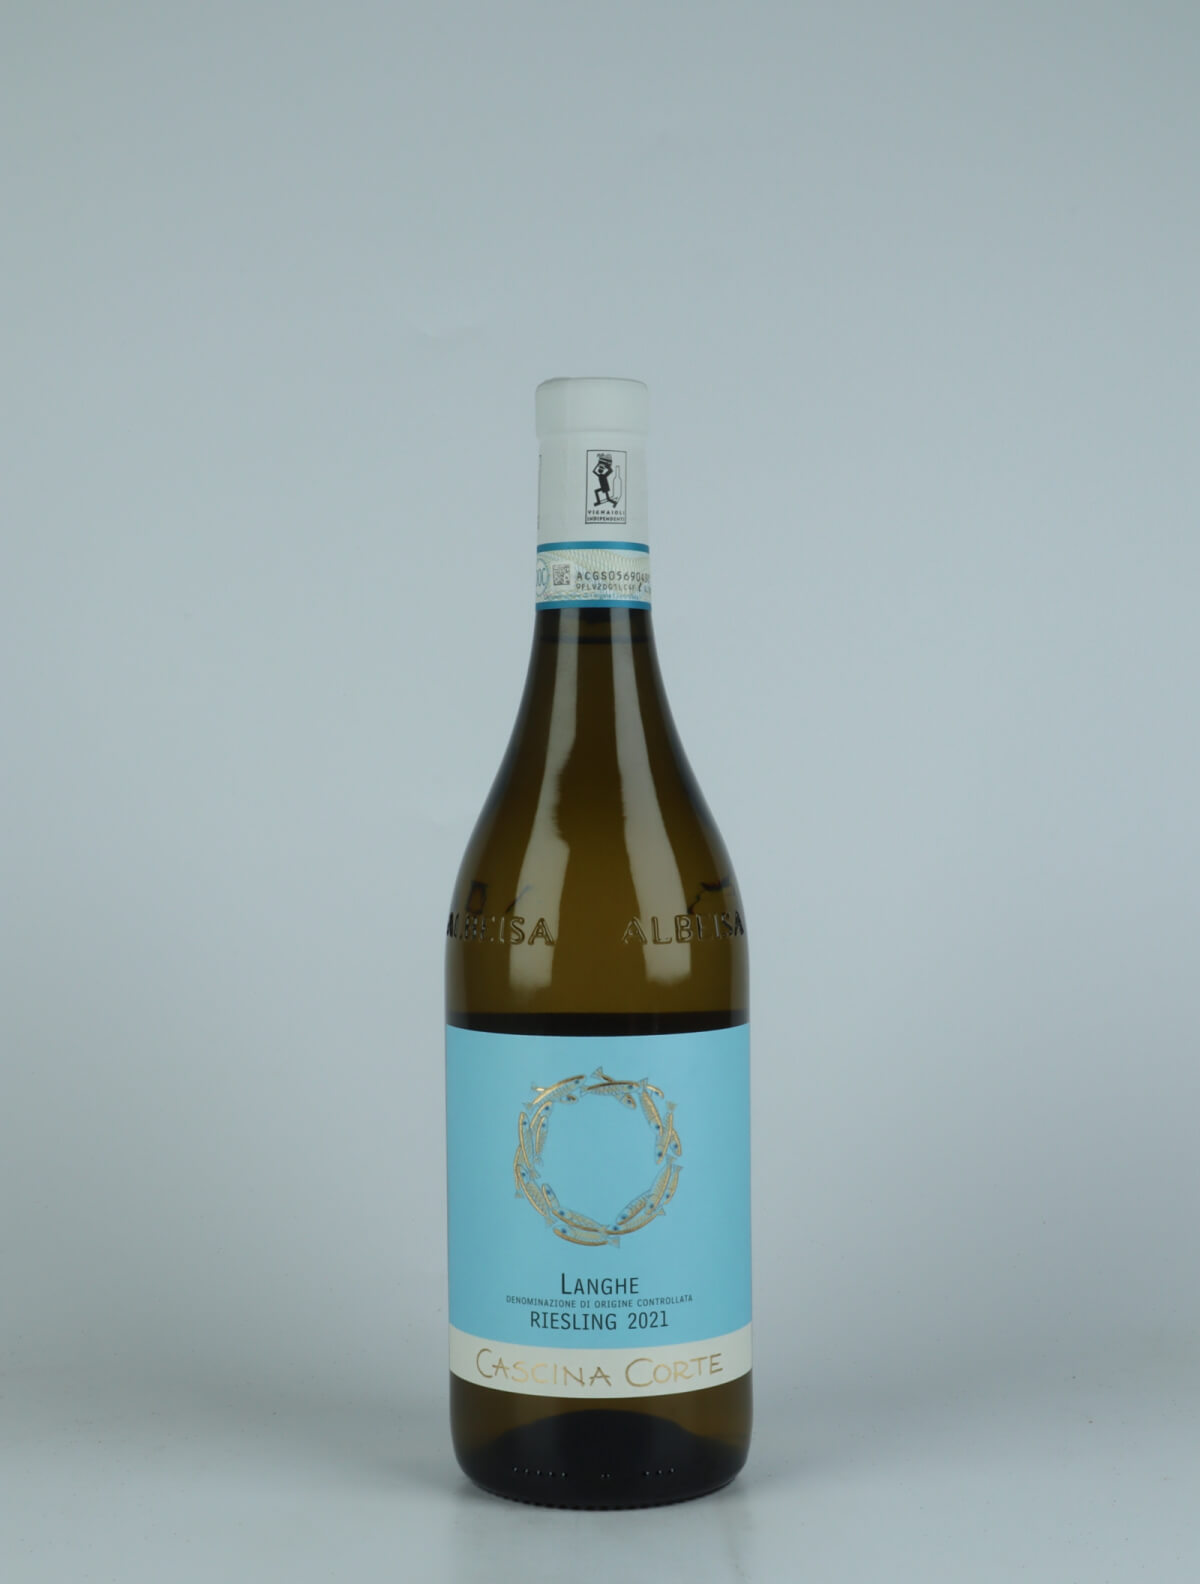 En flaske 2021 Langhe Riesling Hvidvin fra Cascina Corte, Piemonte i Italien